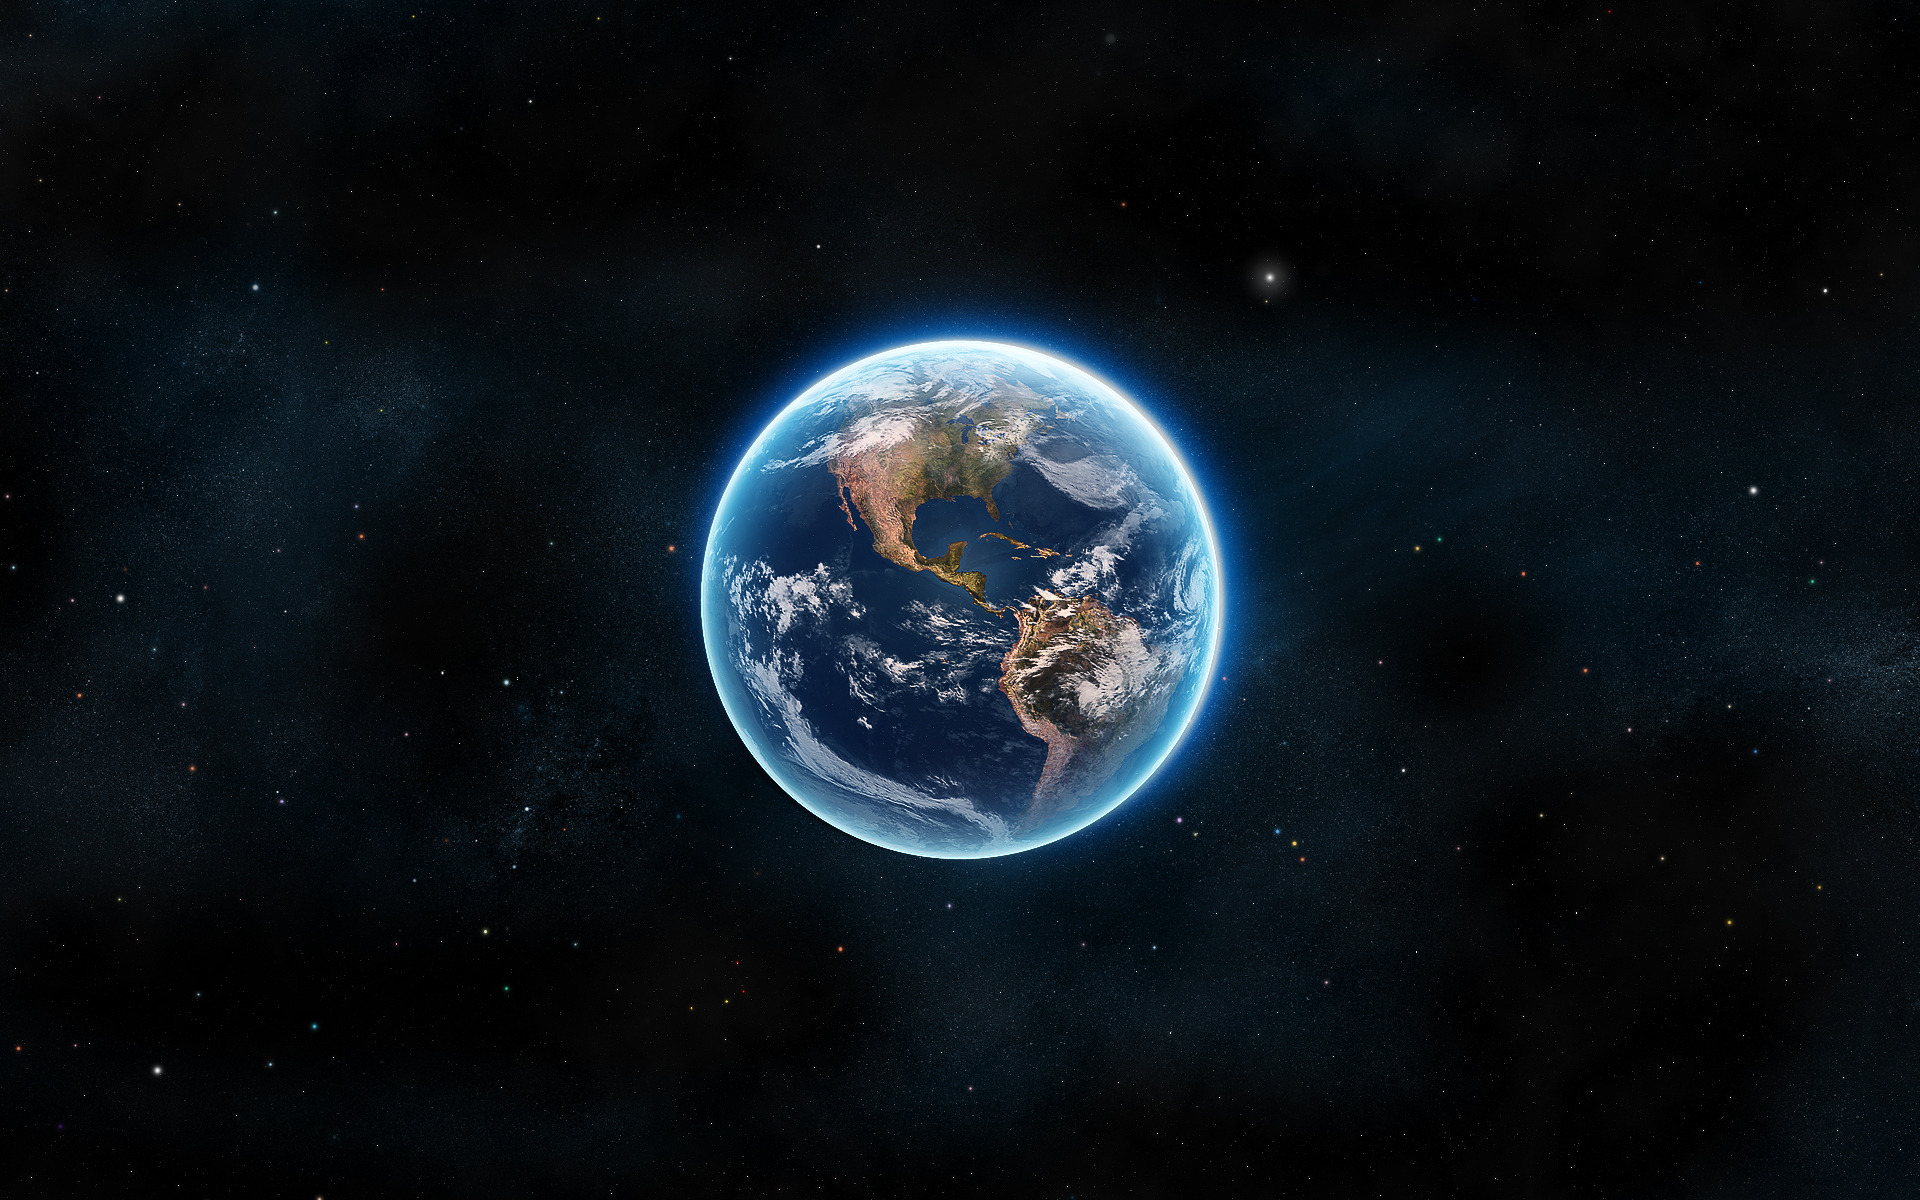 Обои Земля из космоса картинки на рабочий стол на тему Космос - скачать бесплатно